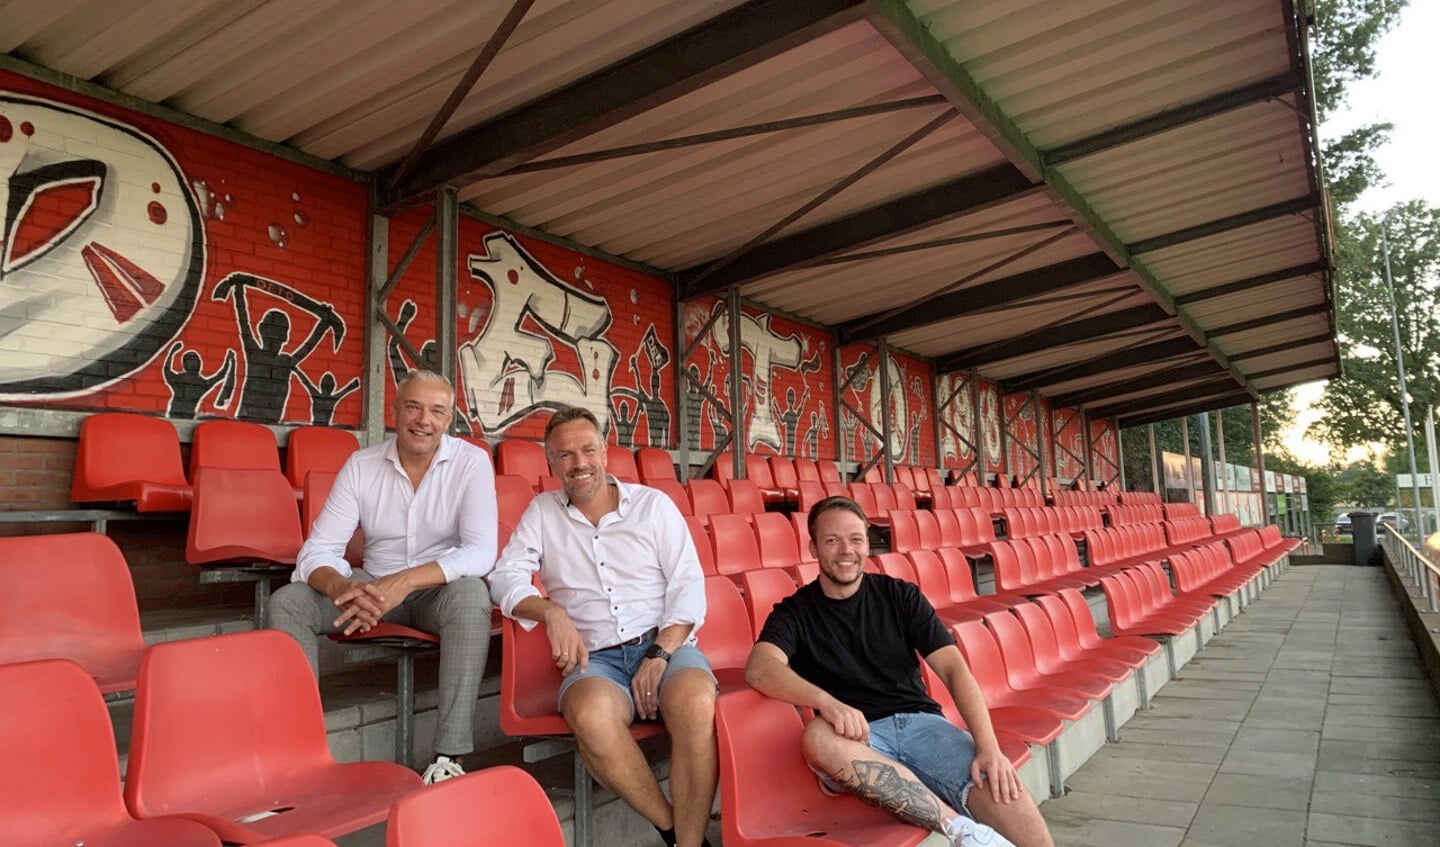 Harald Rohof (voorzitter supportersvereniging), Derby Krommendijk (voorzitter DETO) en Ted Duursma (skik.an) voor het graffiti-kunstwerk.